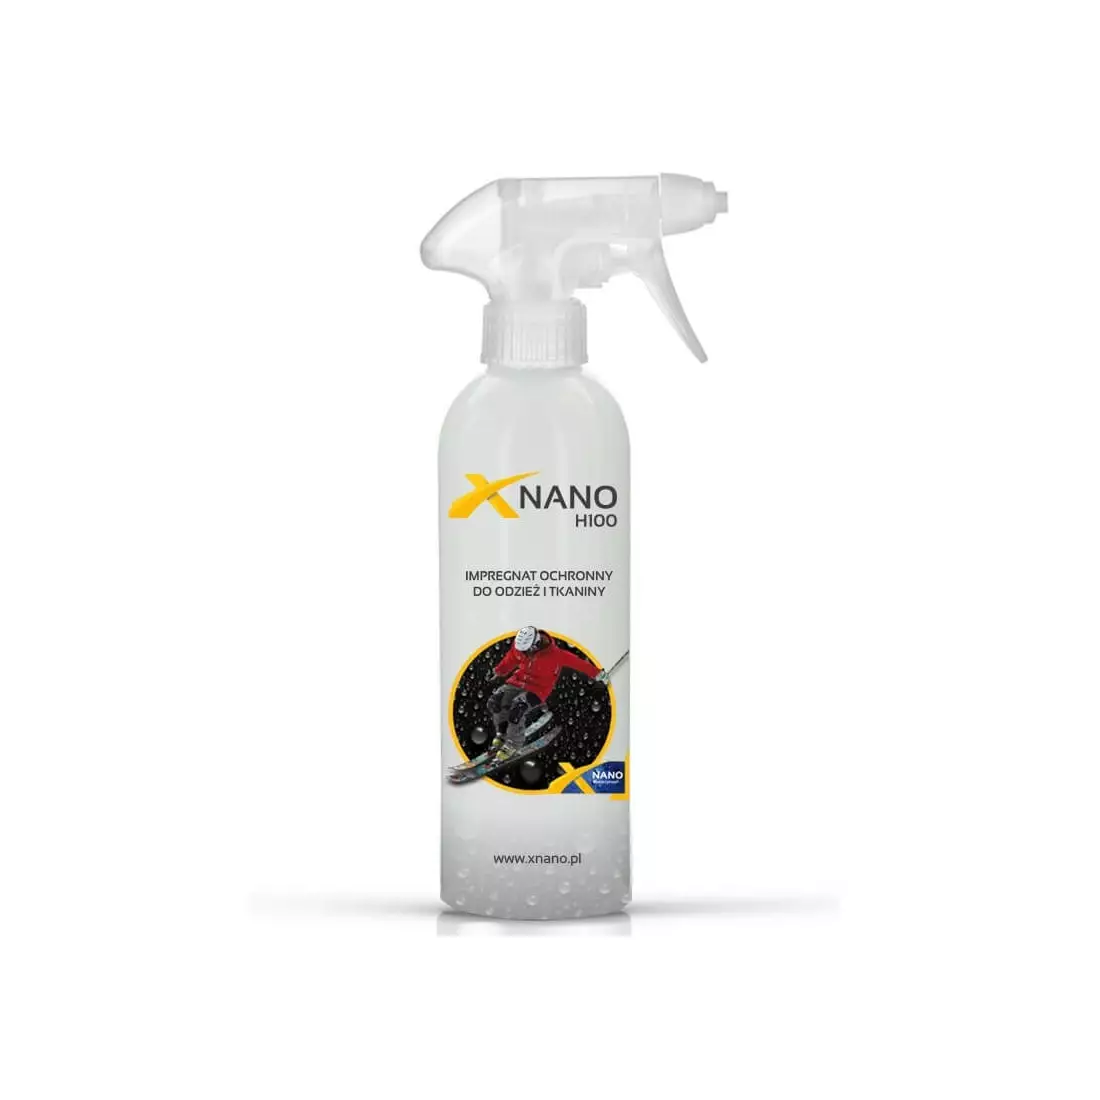 NANOBIZ - XNANO - H100 Schutzimprägnierung für Kleidung und Stoffe, Fassungsvermögen: 250 ml